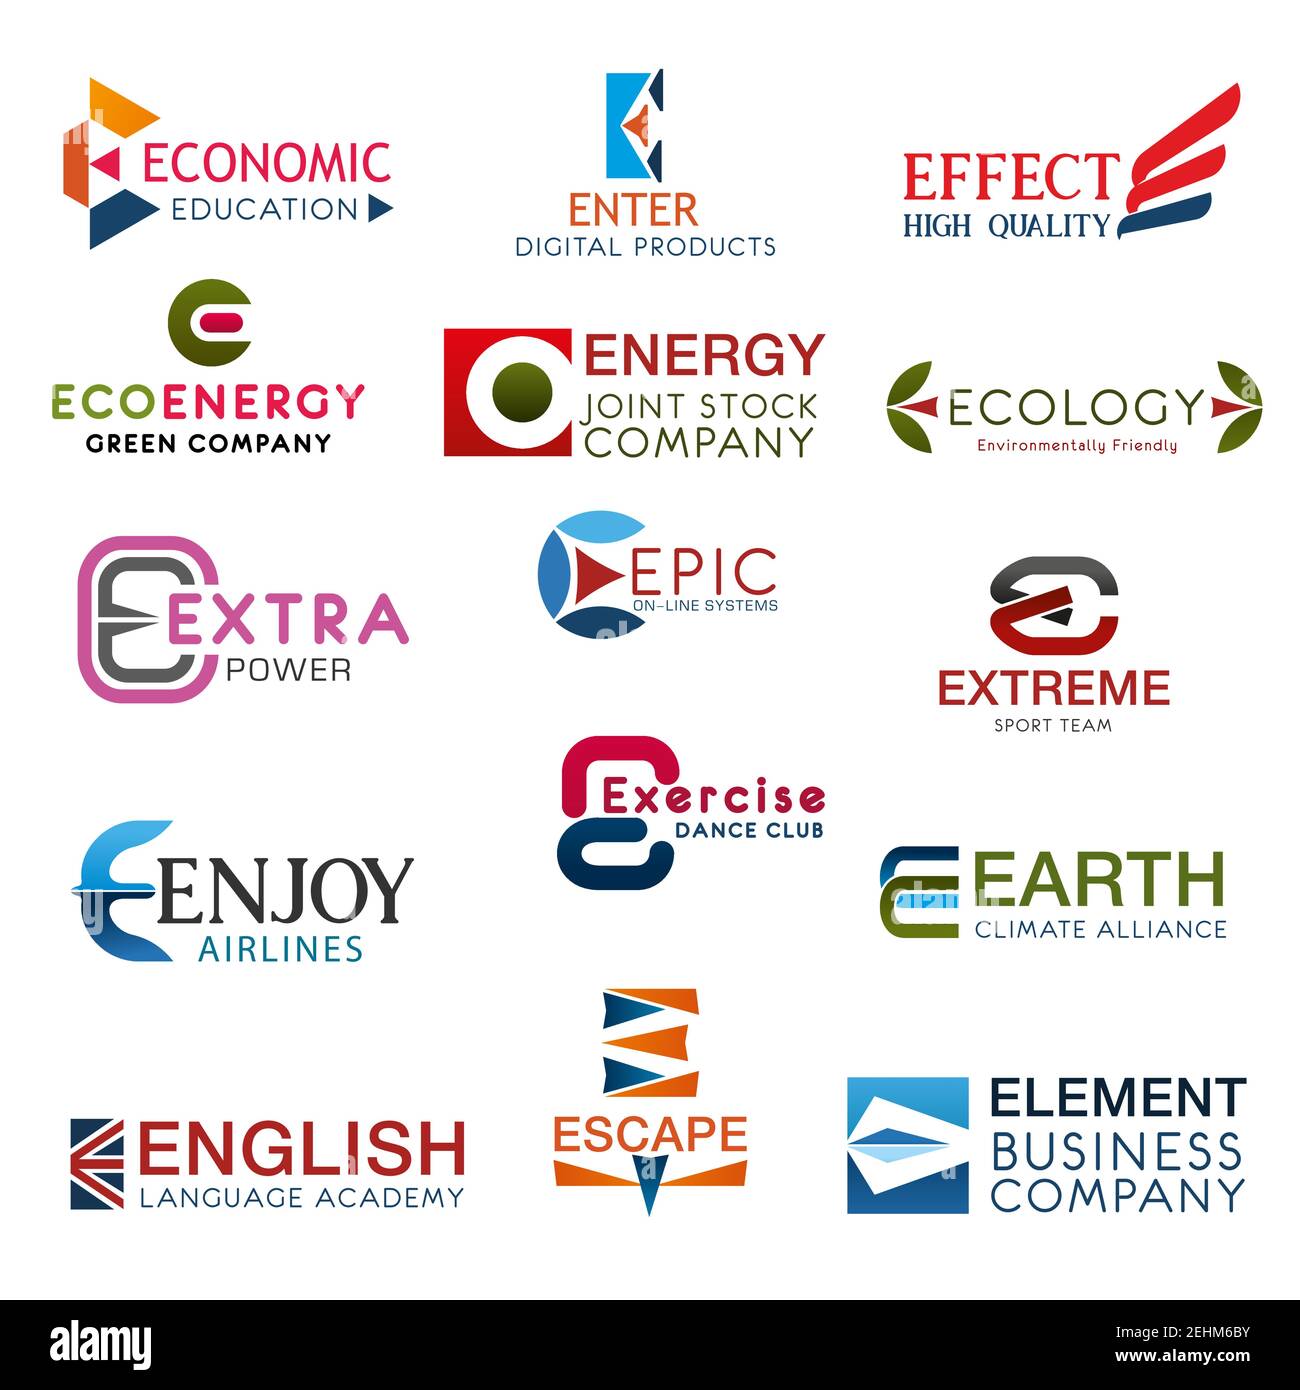 E-Buchstaben Symbole Wirtschaft und Bildung, Englisch Kurse Symbol mit Flagge, Umweltschutz Organisation Zeichen. Extreme und Fitness-Club, Energie busi Stock Vektor